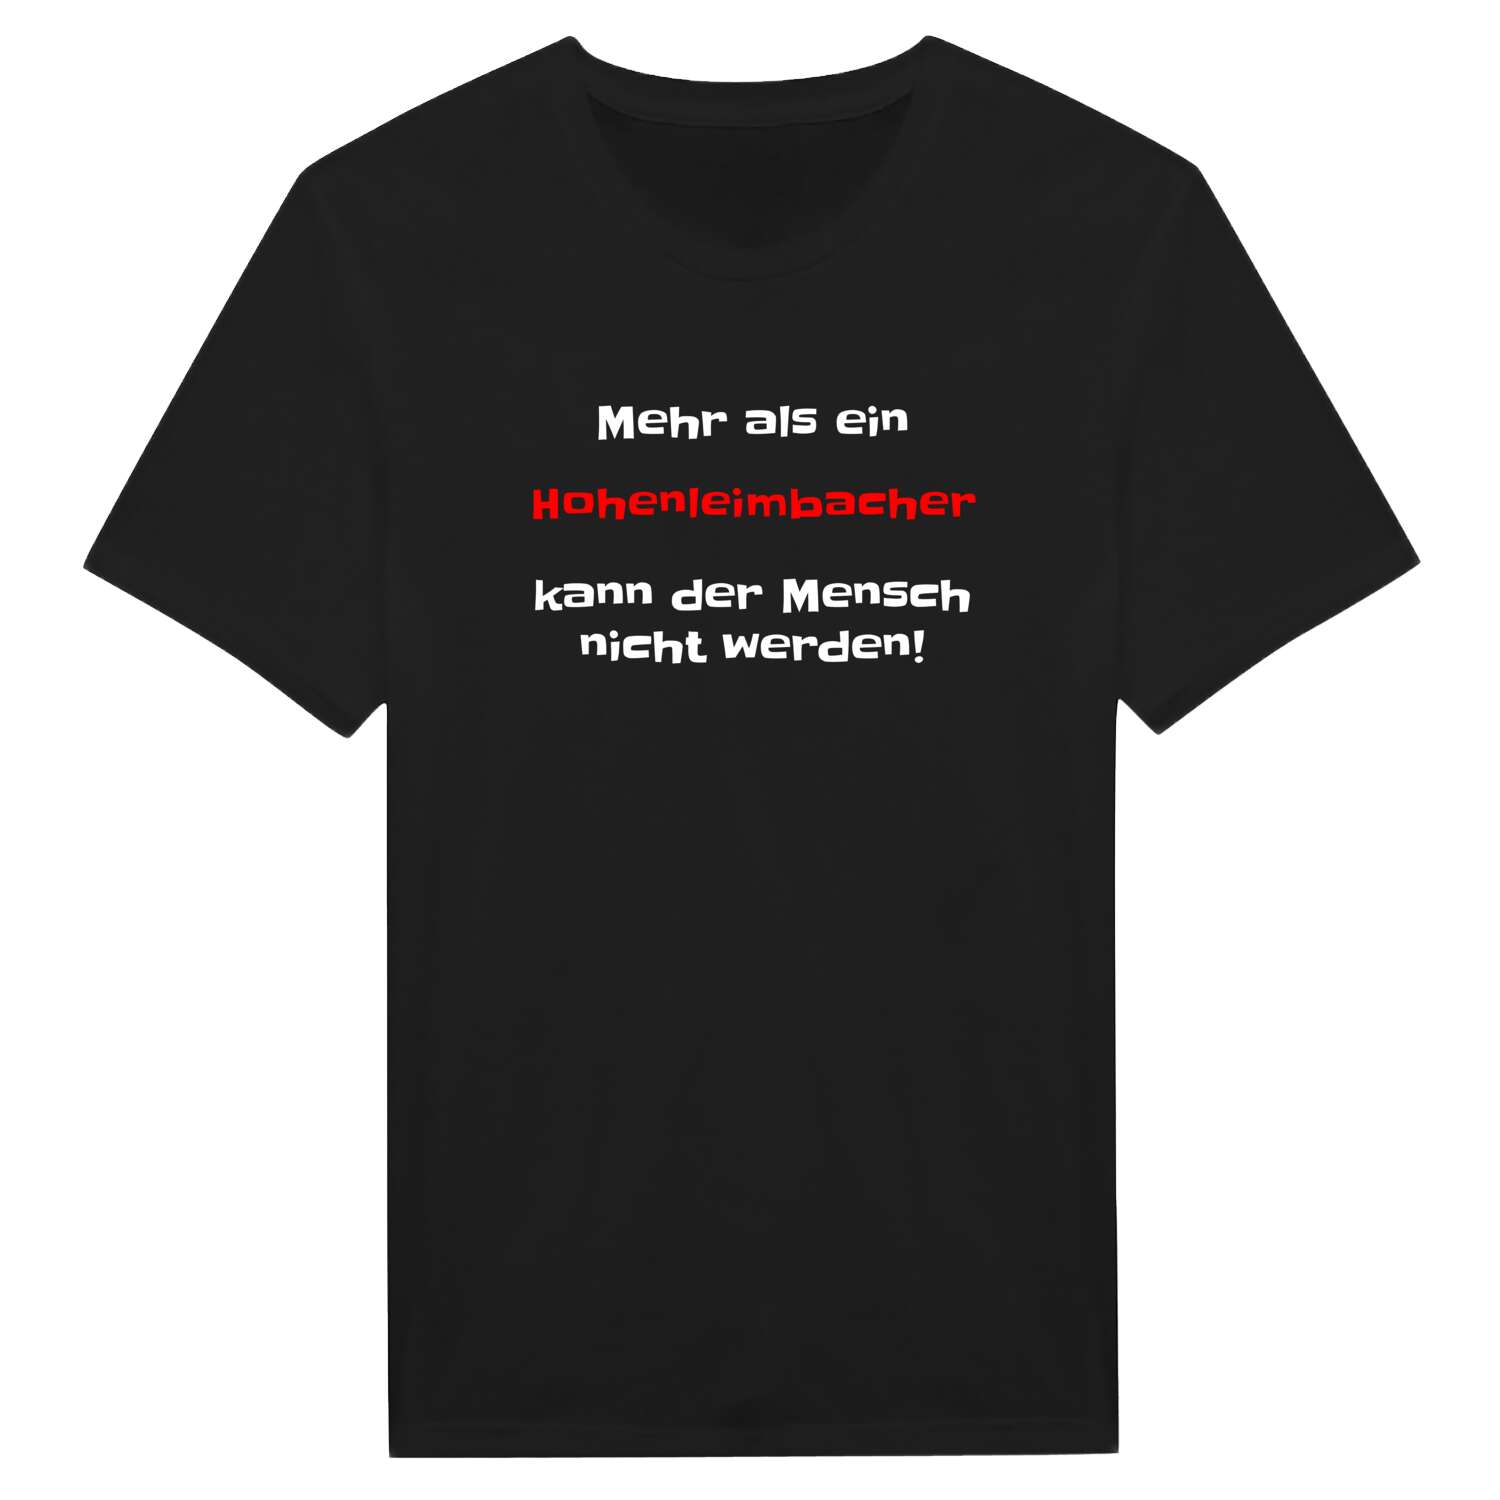 Hohenleimbach T-Shirt »Mehr als ein«